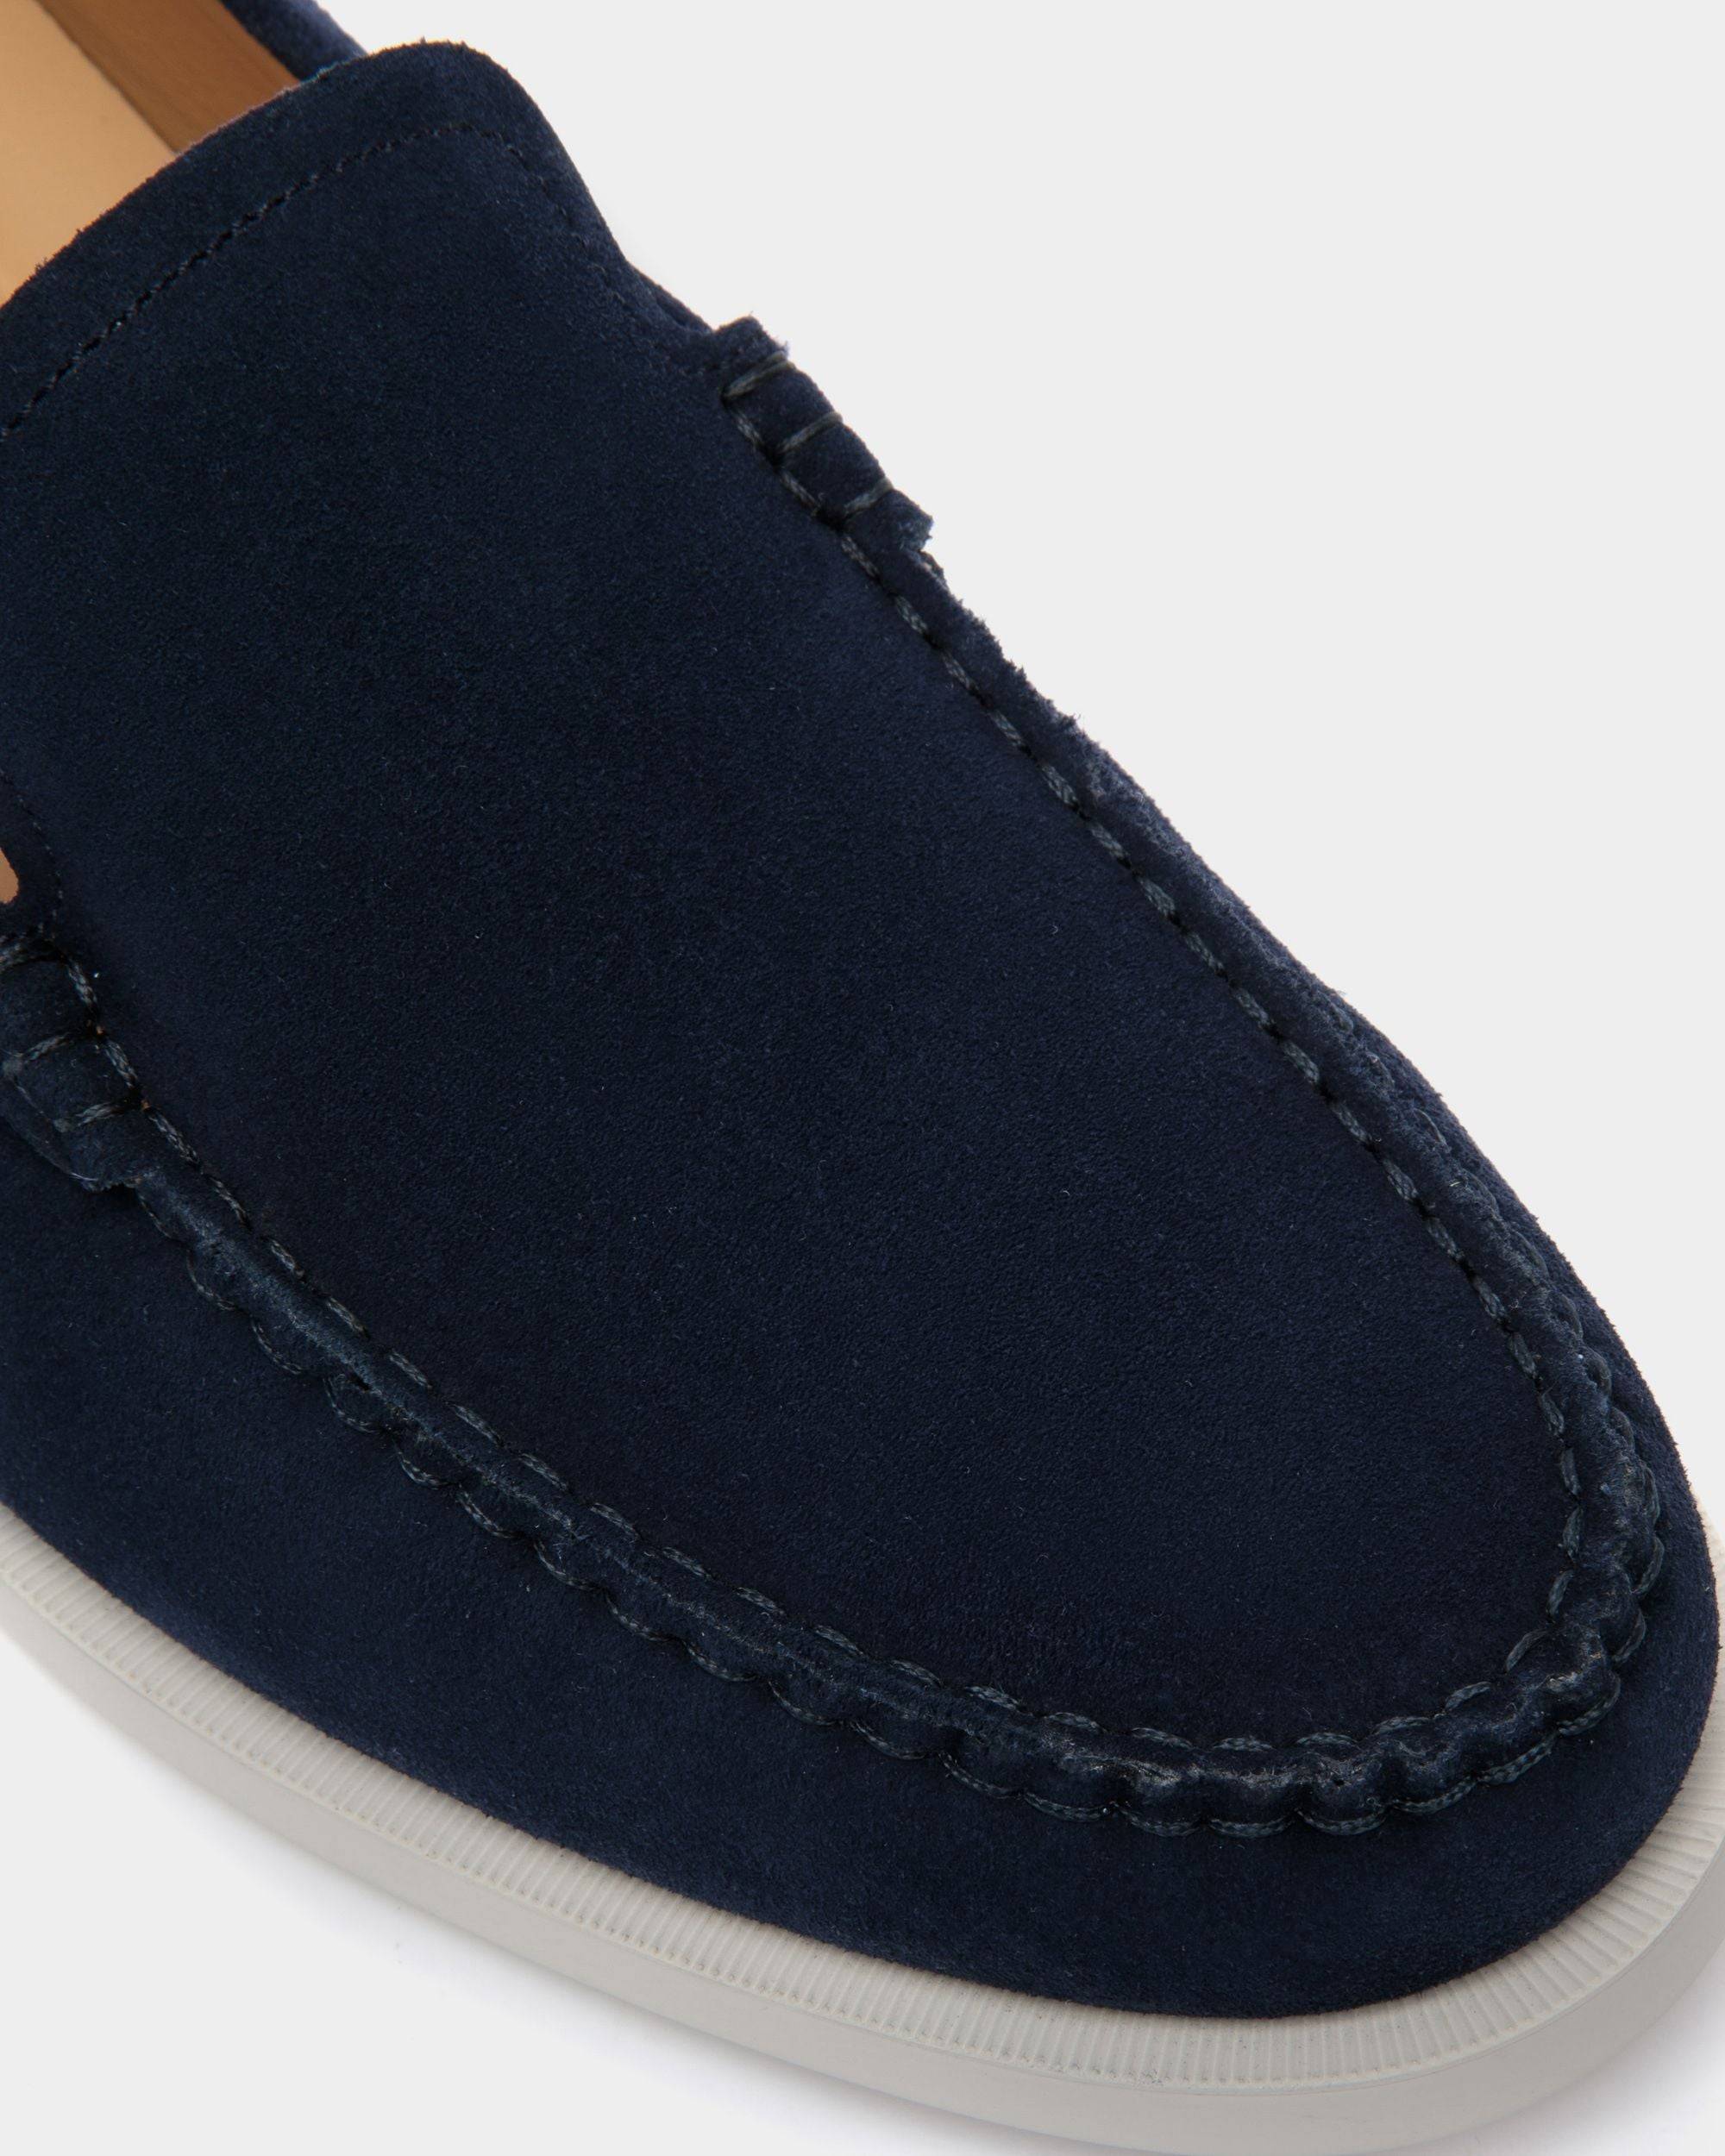 Nelson | Loafers für Herren aus Veloursleder in Blau | Bally | Still Life Detail